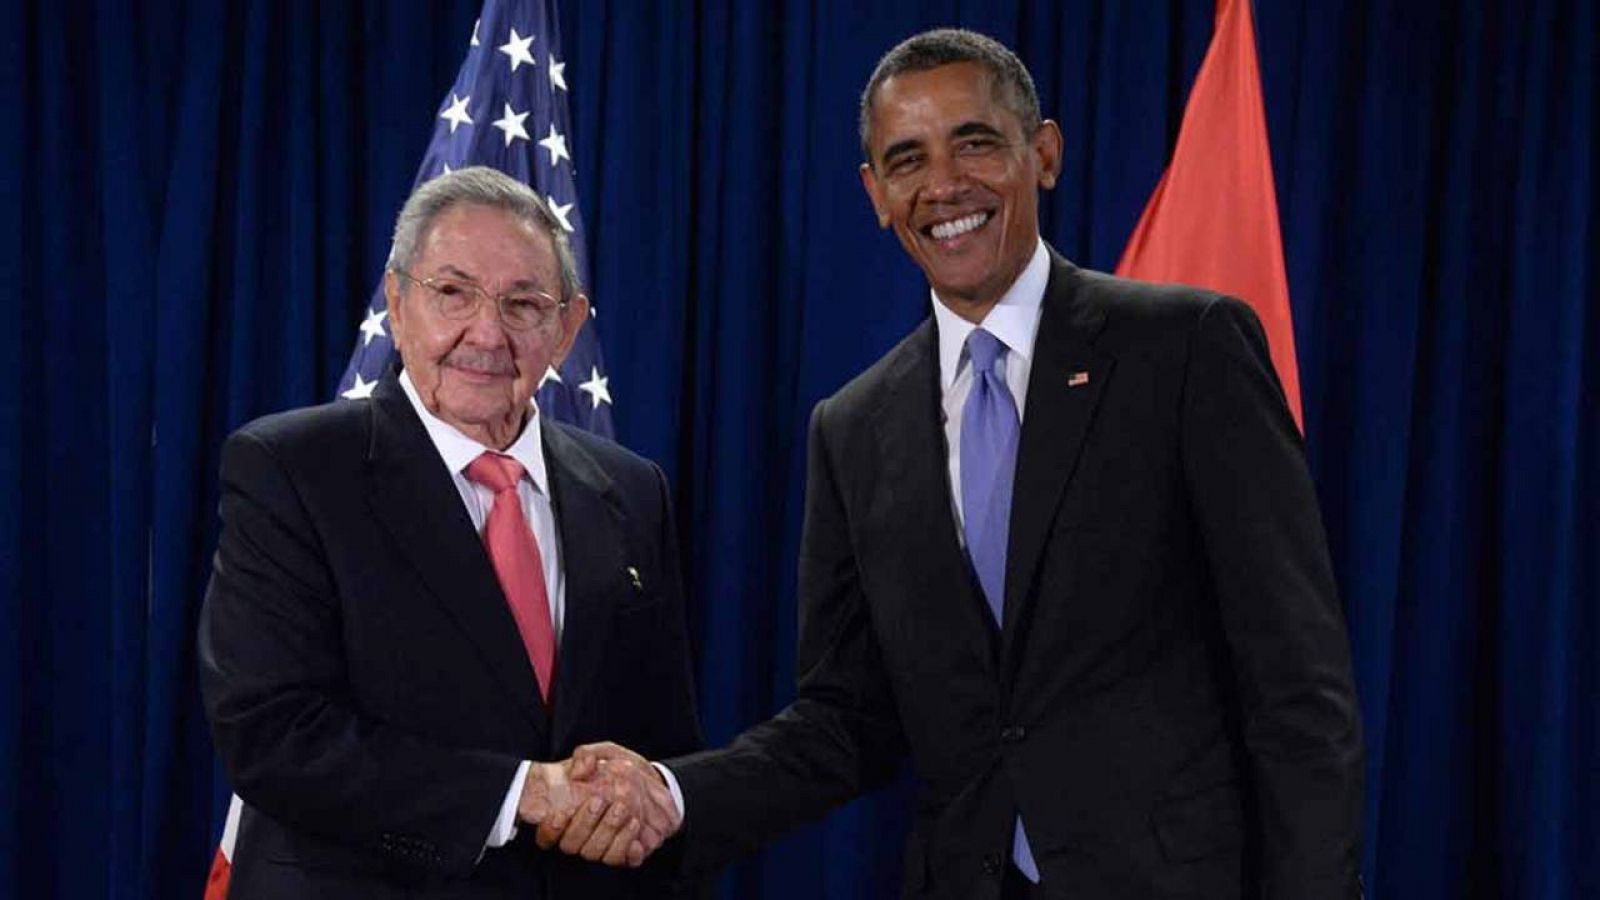 El presidente de Estados Unidos, Barack Obama con su homólogo cubano, Raúl Castro, en la sede de las Naciones Unidas en Nueva York el pasado septiembre.